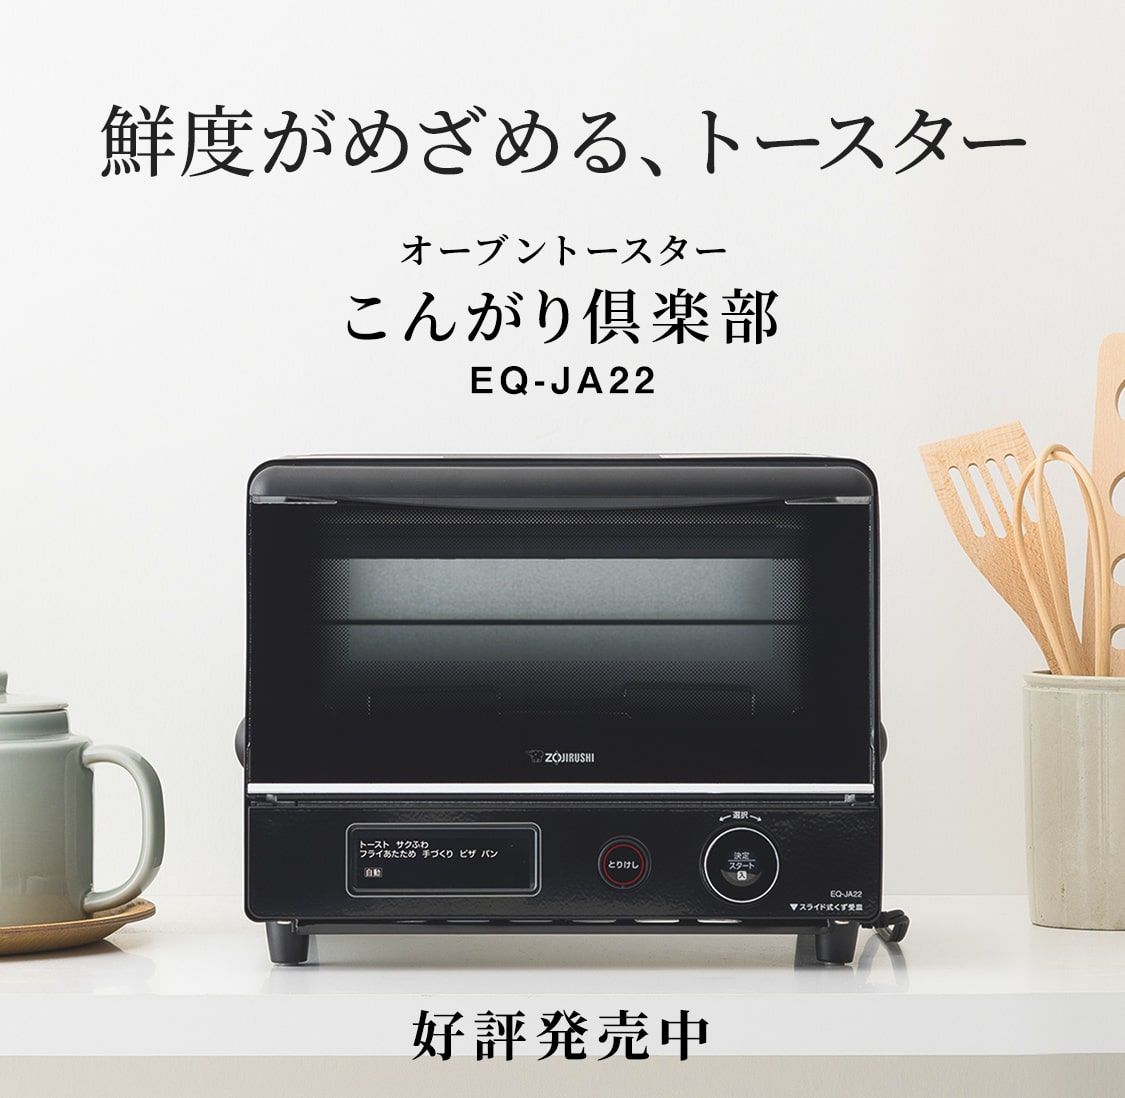 ★新品★象印 オーブントースター EQ-JA22-BA